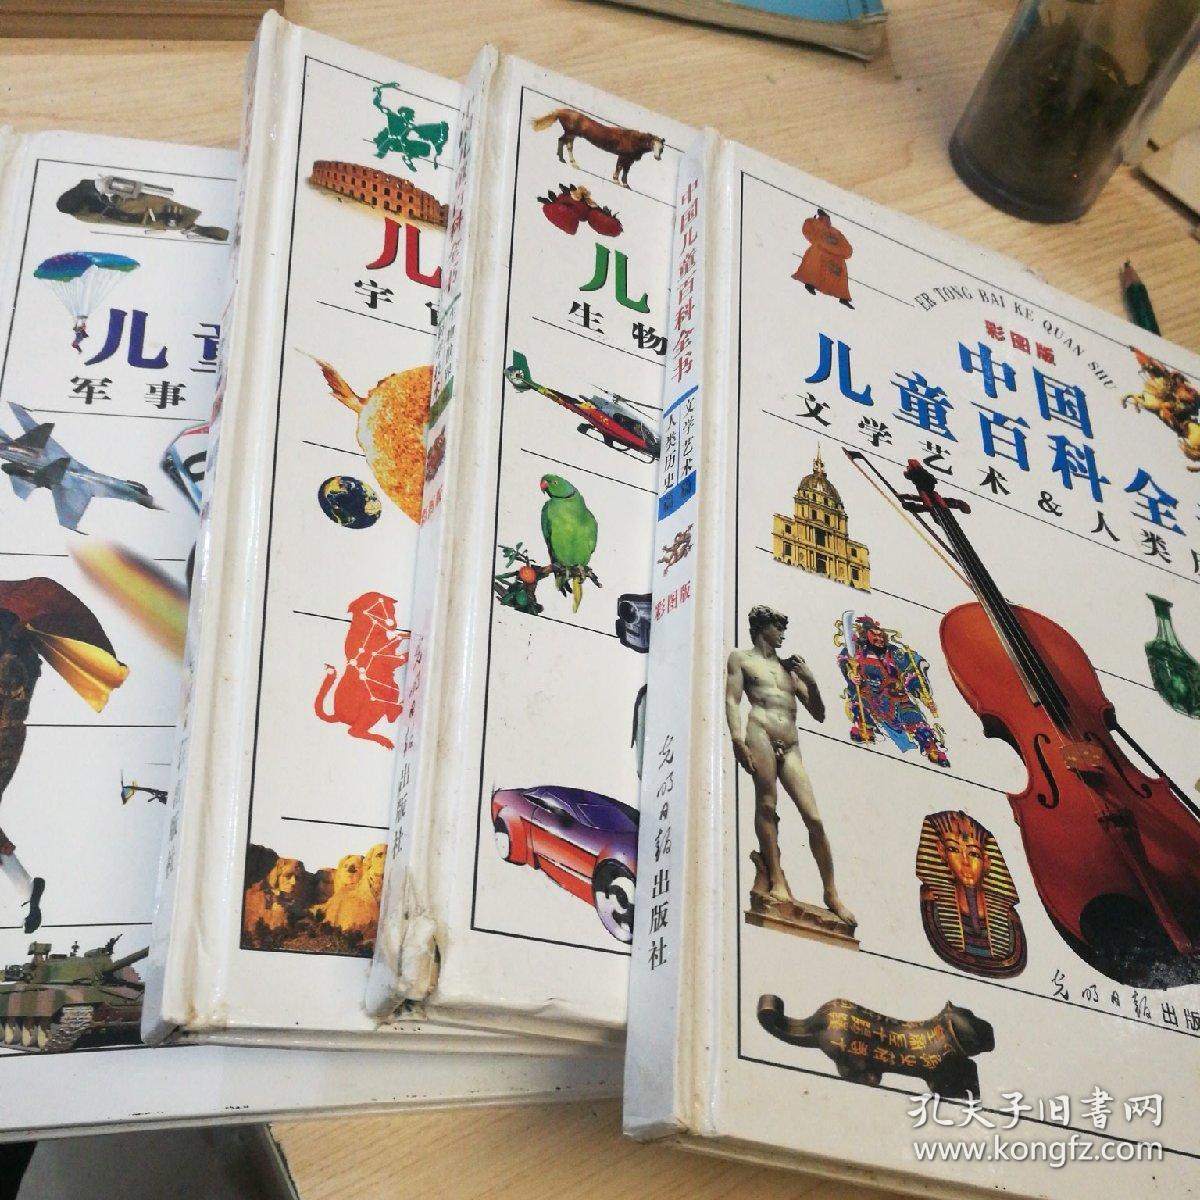 中国儿童百科全书   精装全四册【彩图版】